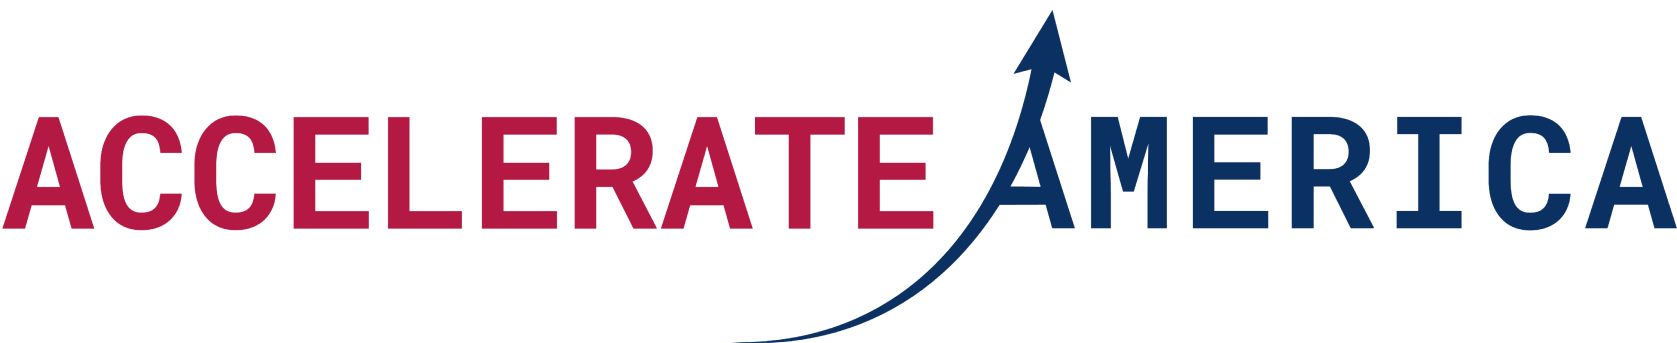 Accelerate America Logo